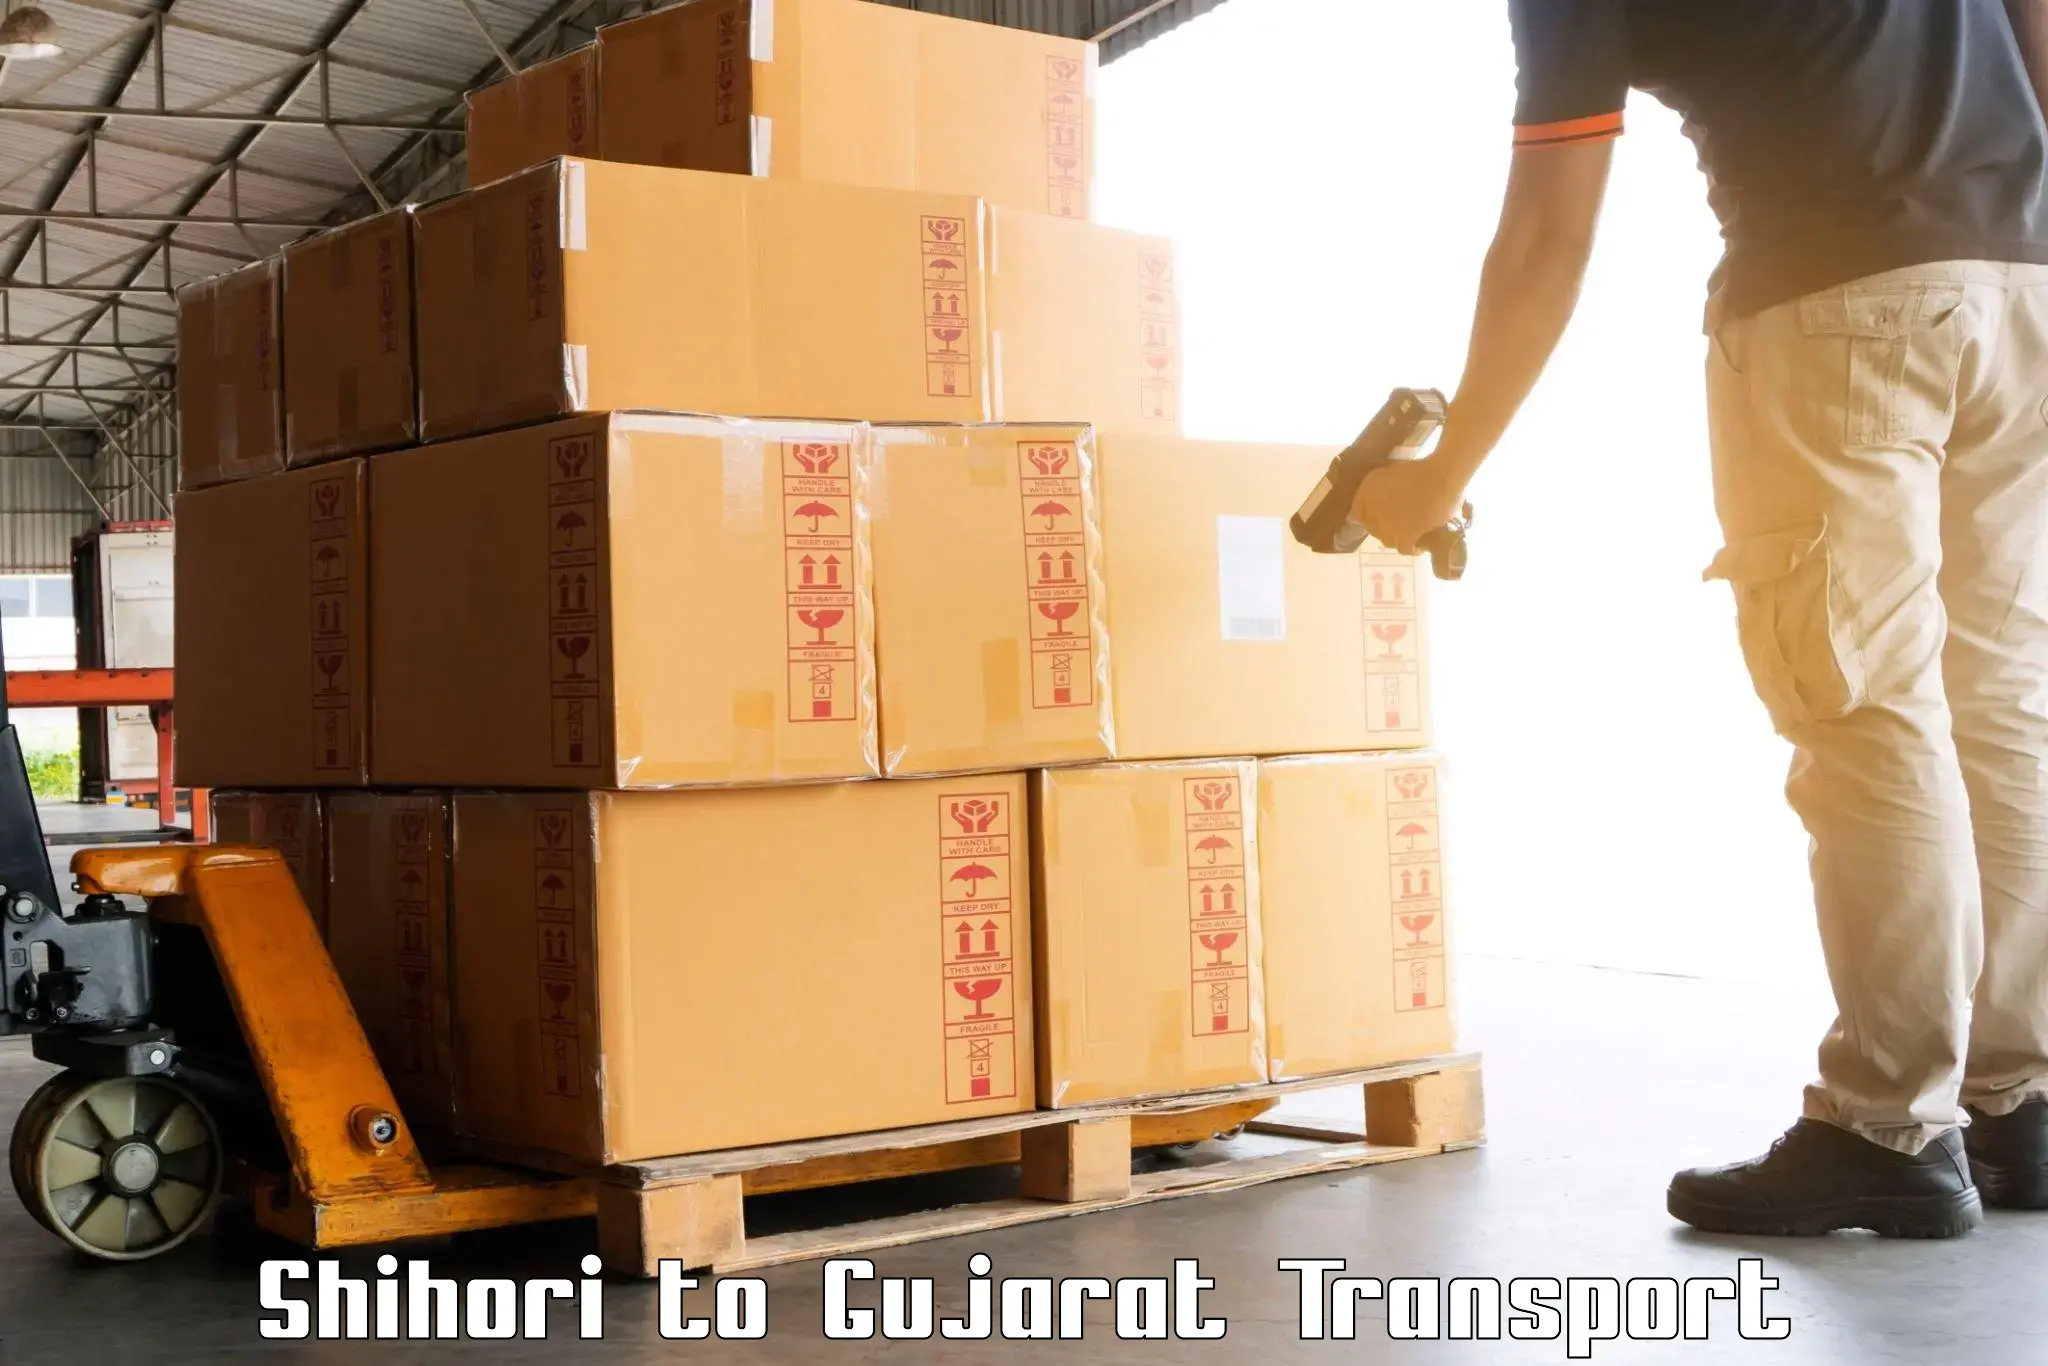 Transport in sharing Shihori to Rapar